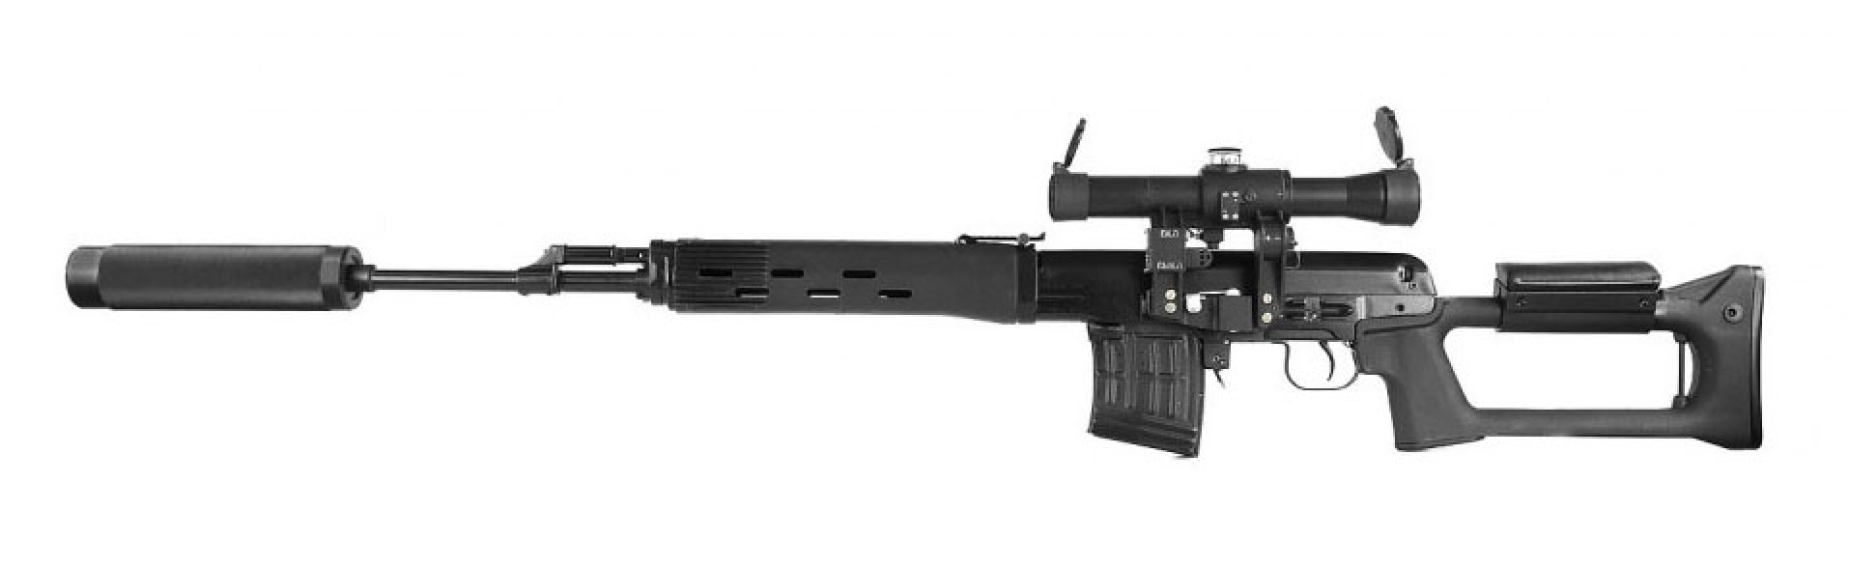 Снайперская винтовка СВД «ТИТАН» серии «ORIGINAL»